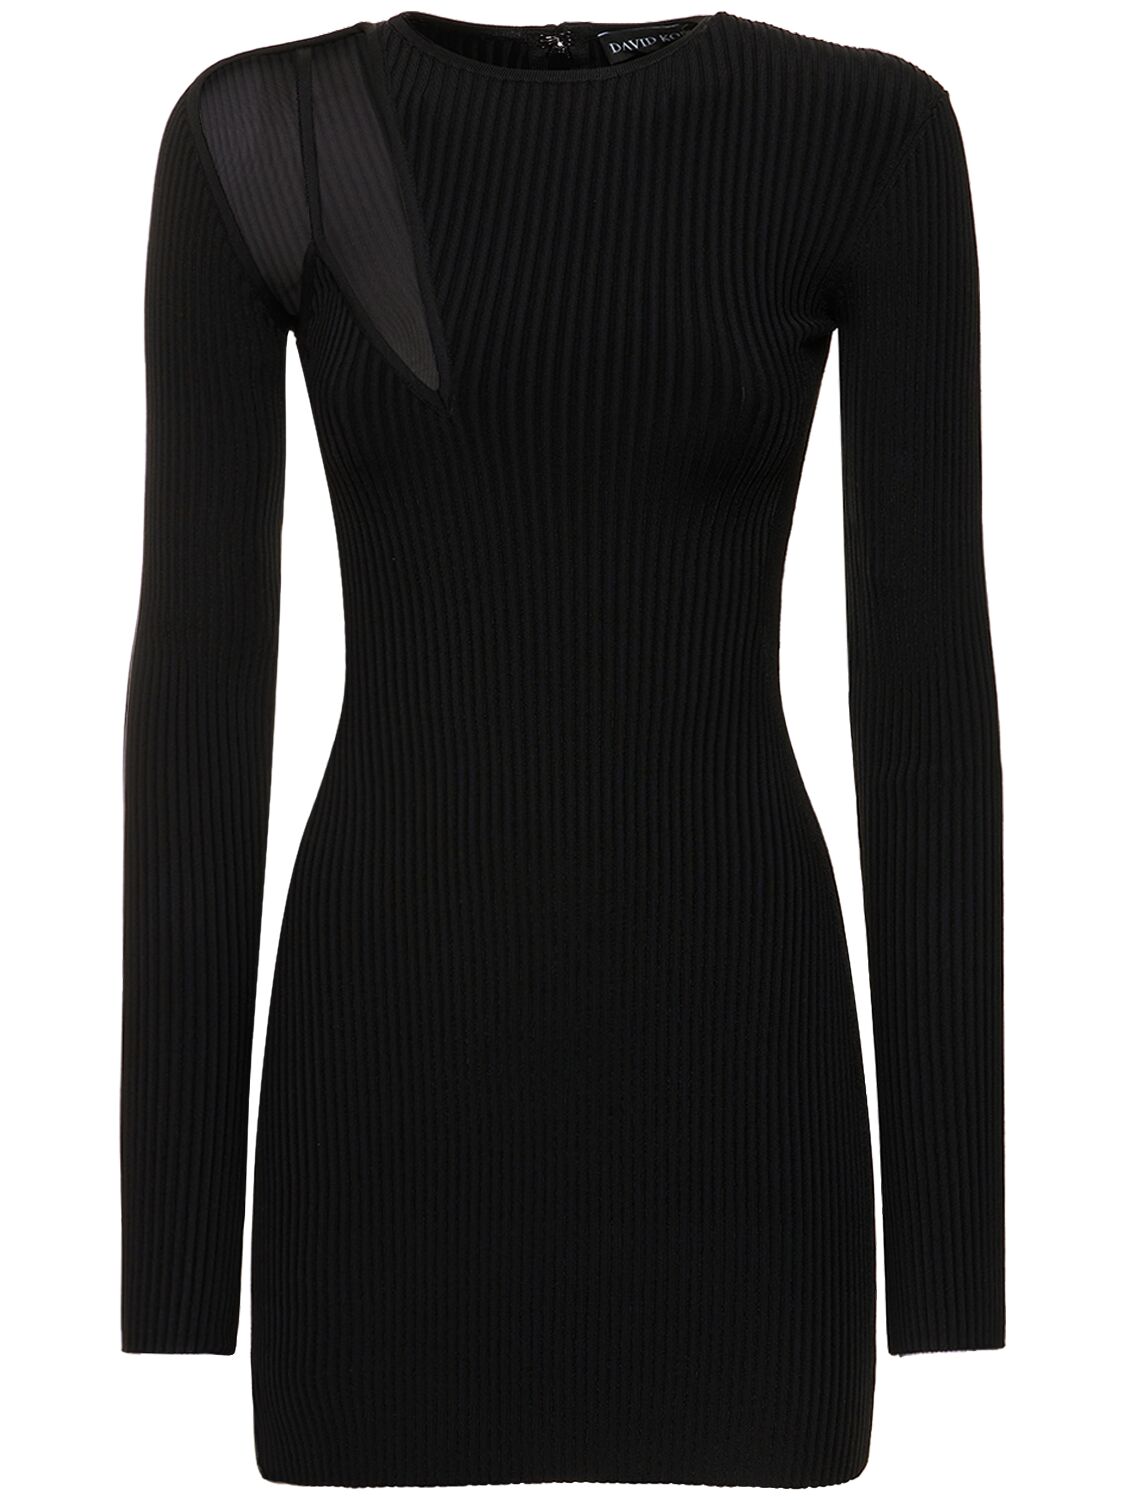 David Koma Bra Detail Net Insert Knit Mini Dress In Black